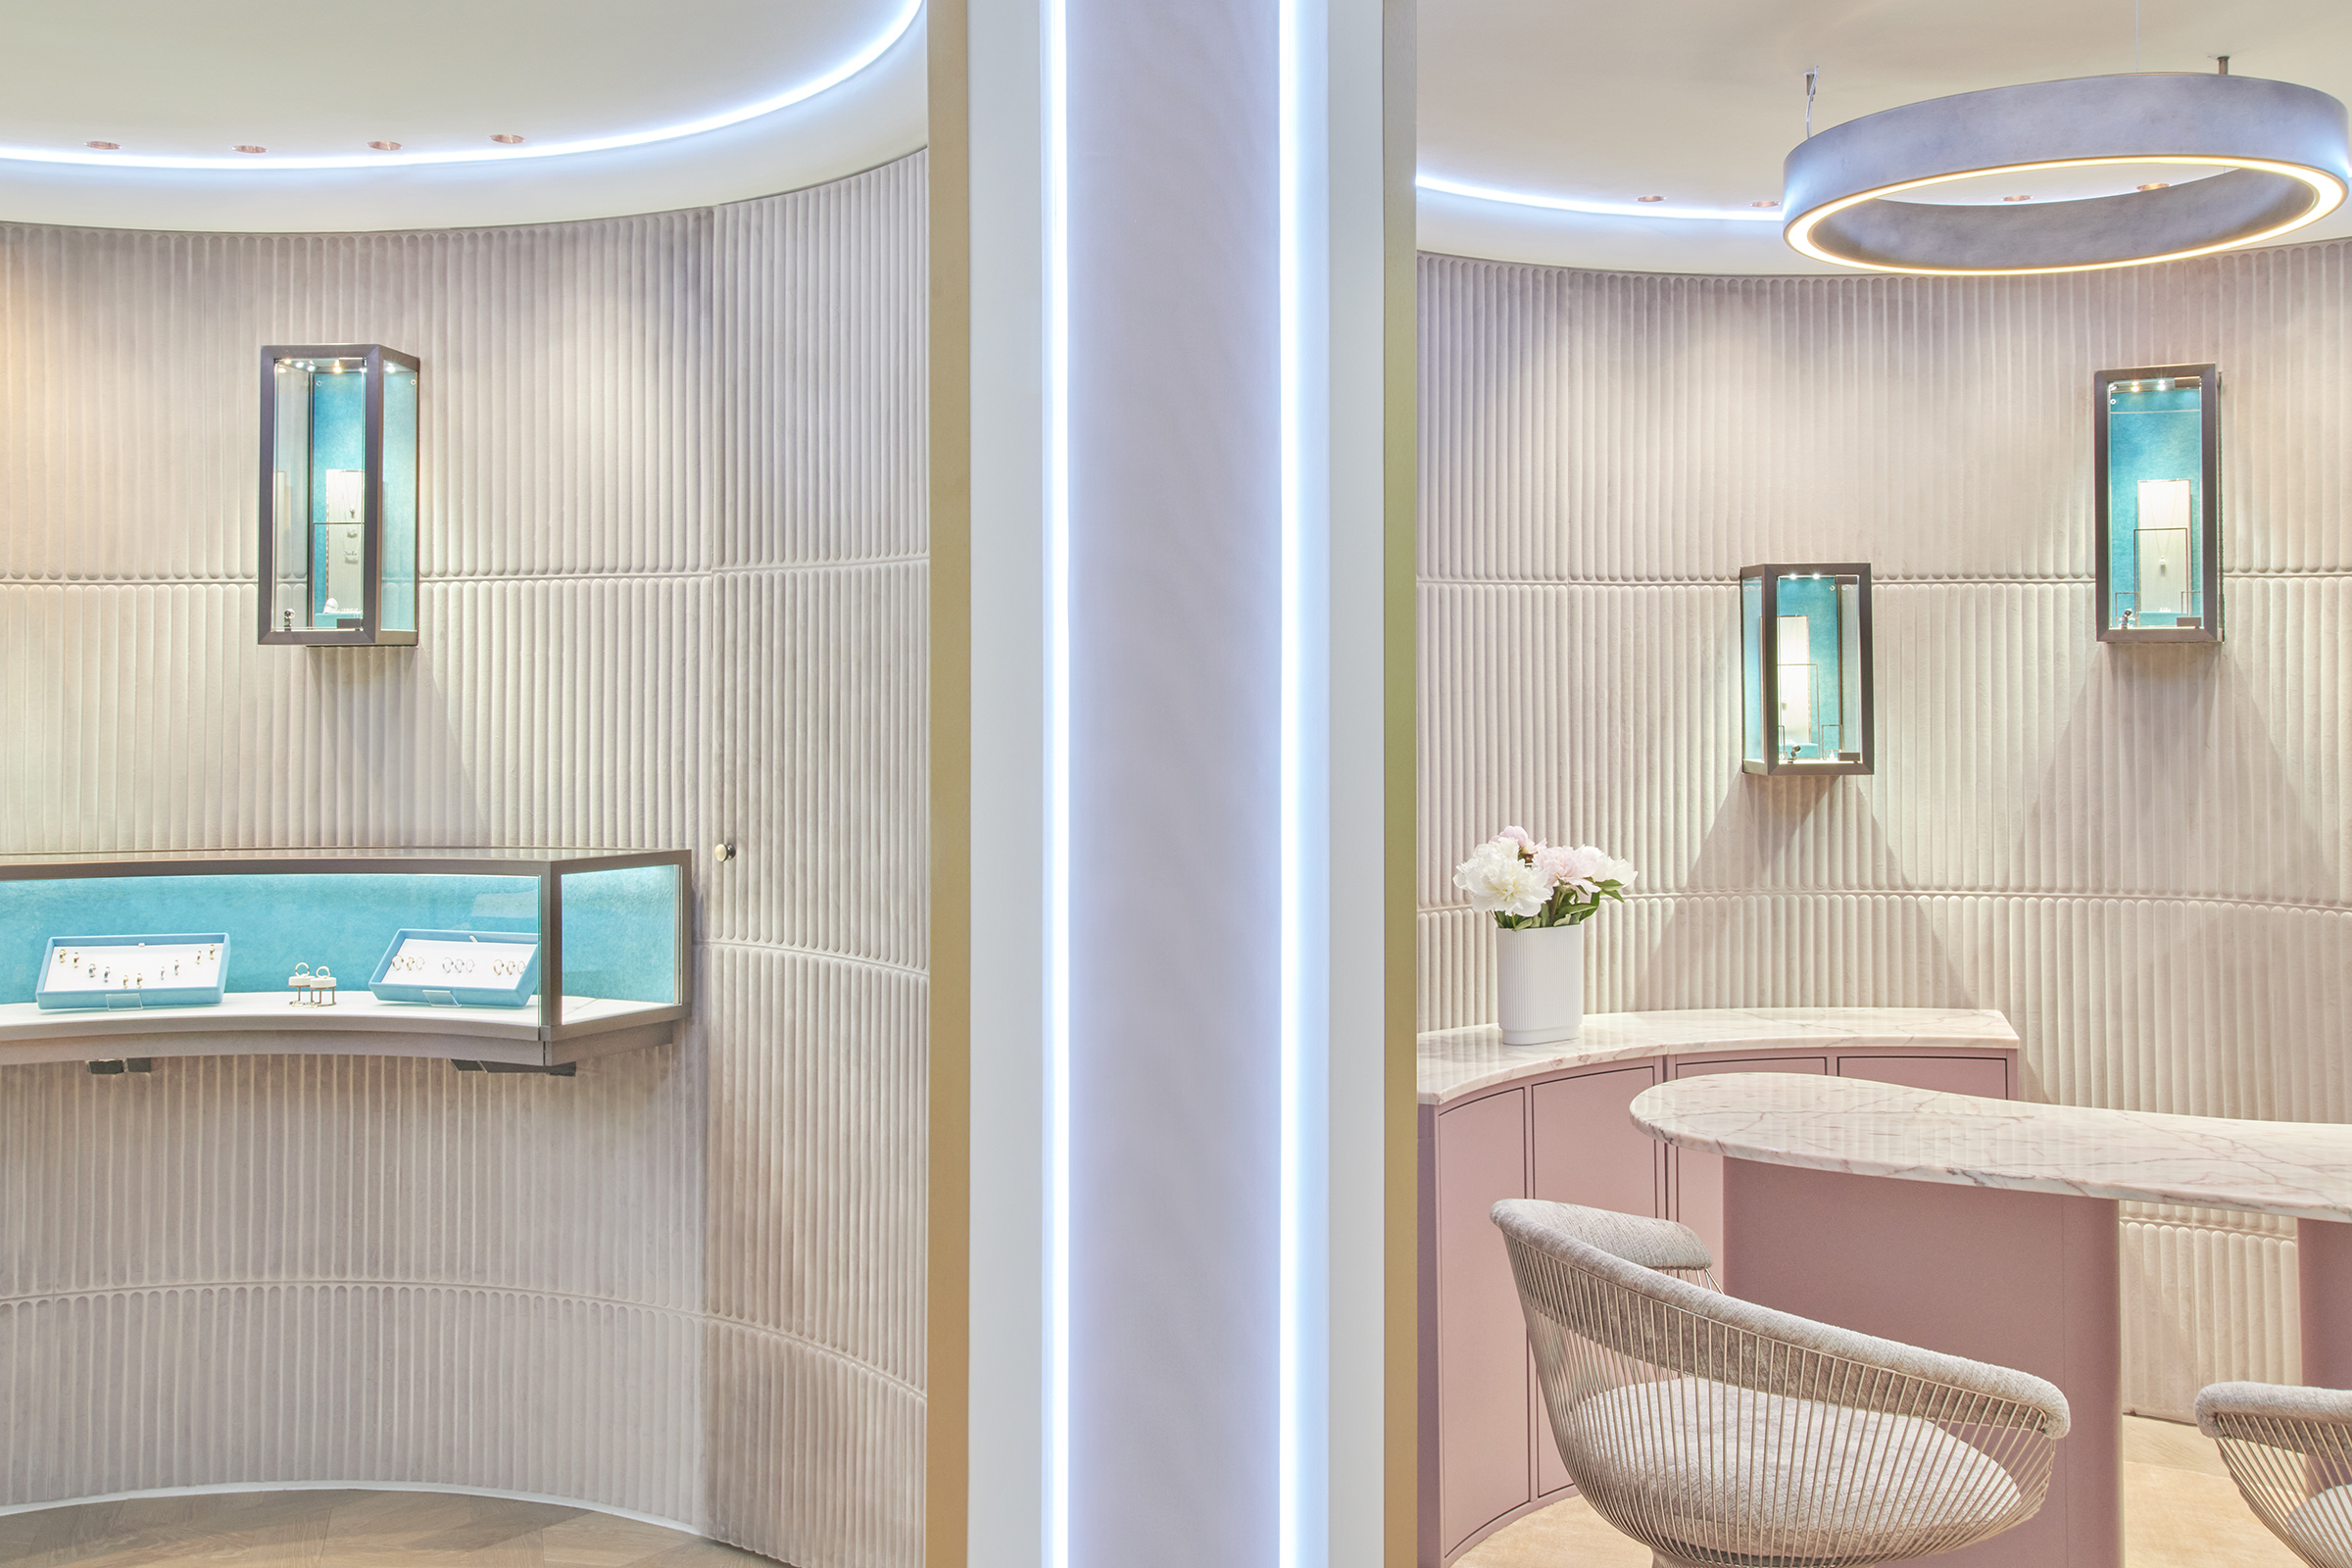 Interior Design Retail Baden Baden Juwelier Reimann Architecture Store Design Luxury Luxus